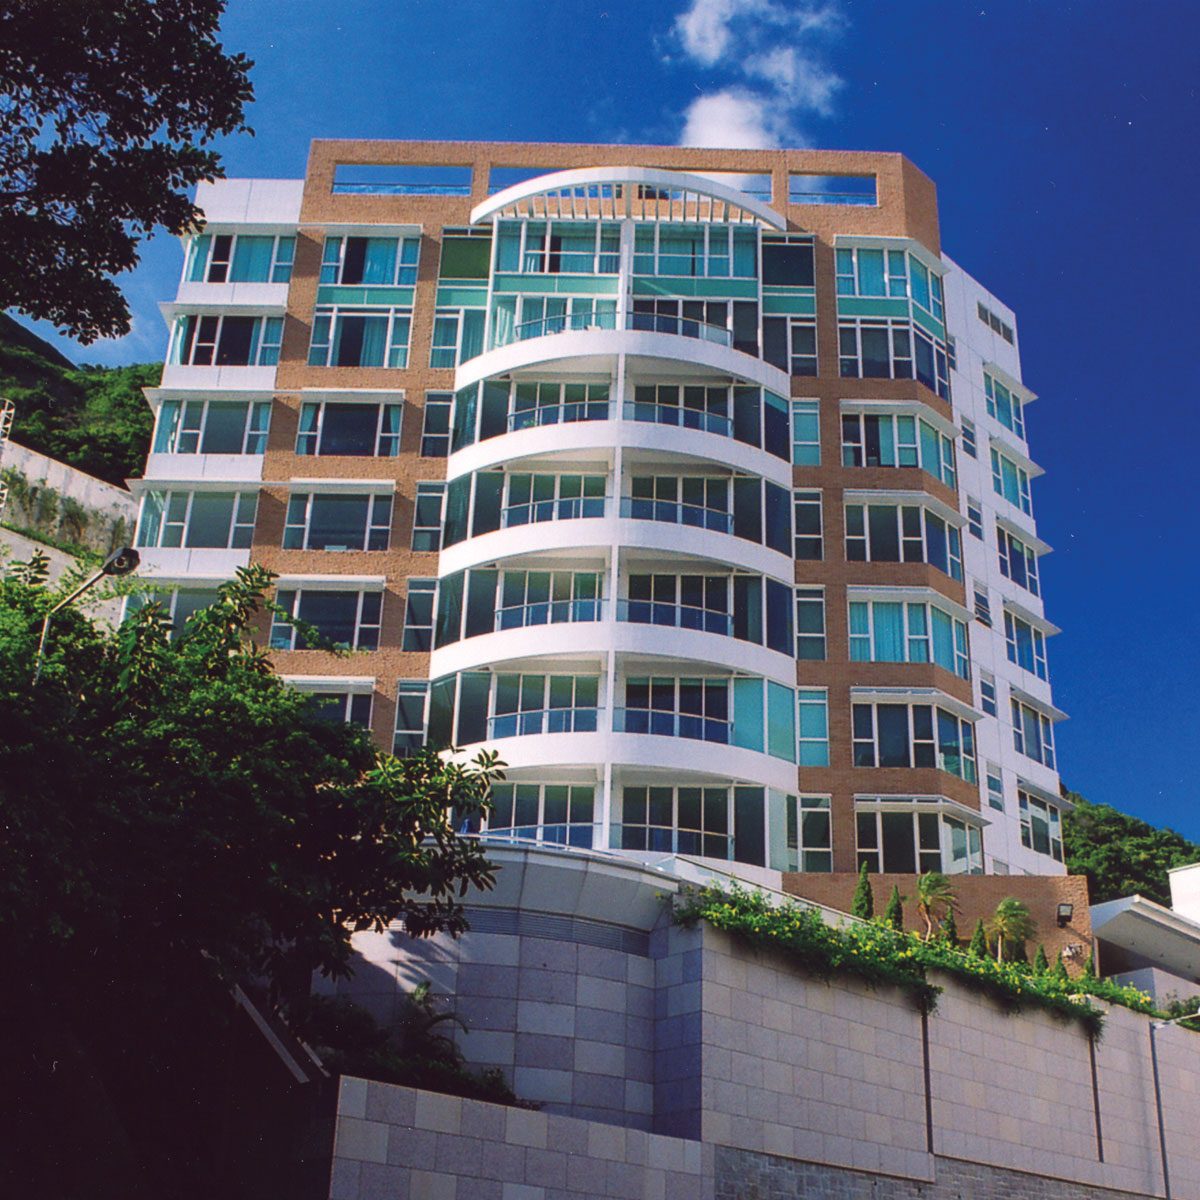 No. 3 South Bay Close, Residential Redevelopment at Repulse Bay, Hong Kong